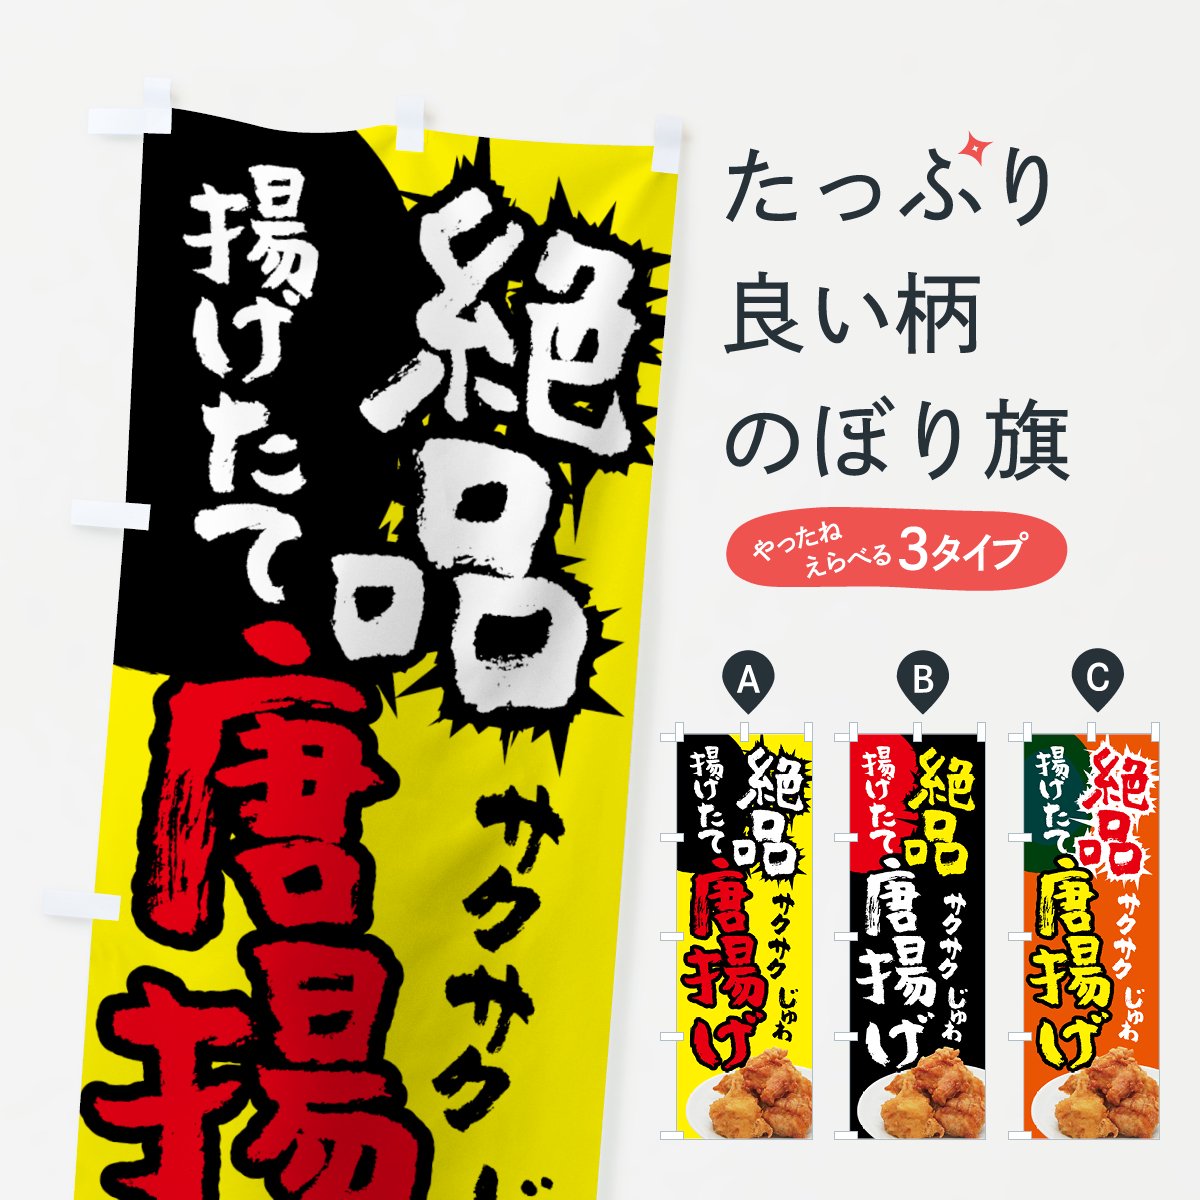 のぼり旗 2枚セット 激辛 担々麺 AKB-629 - 店舗用品